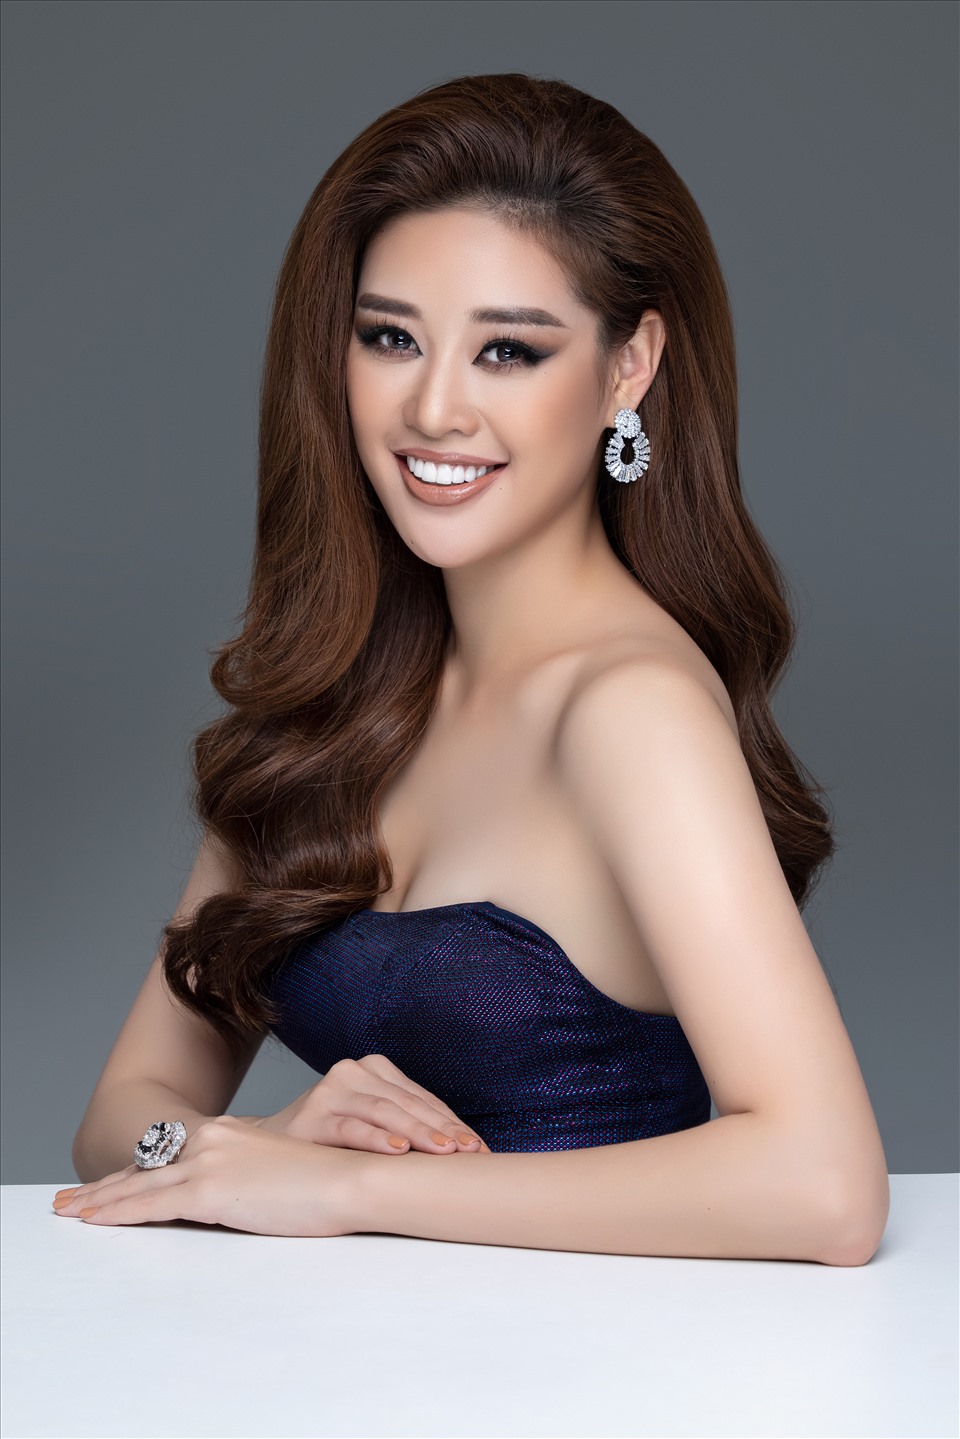 Hoa hậu Khánh Vân